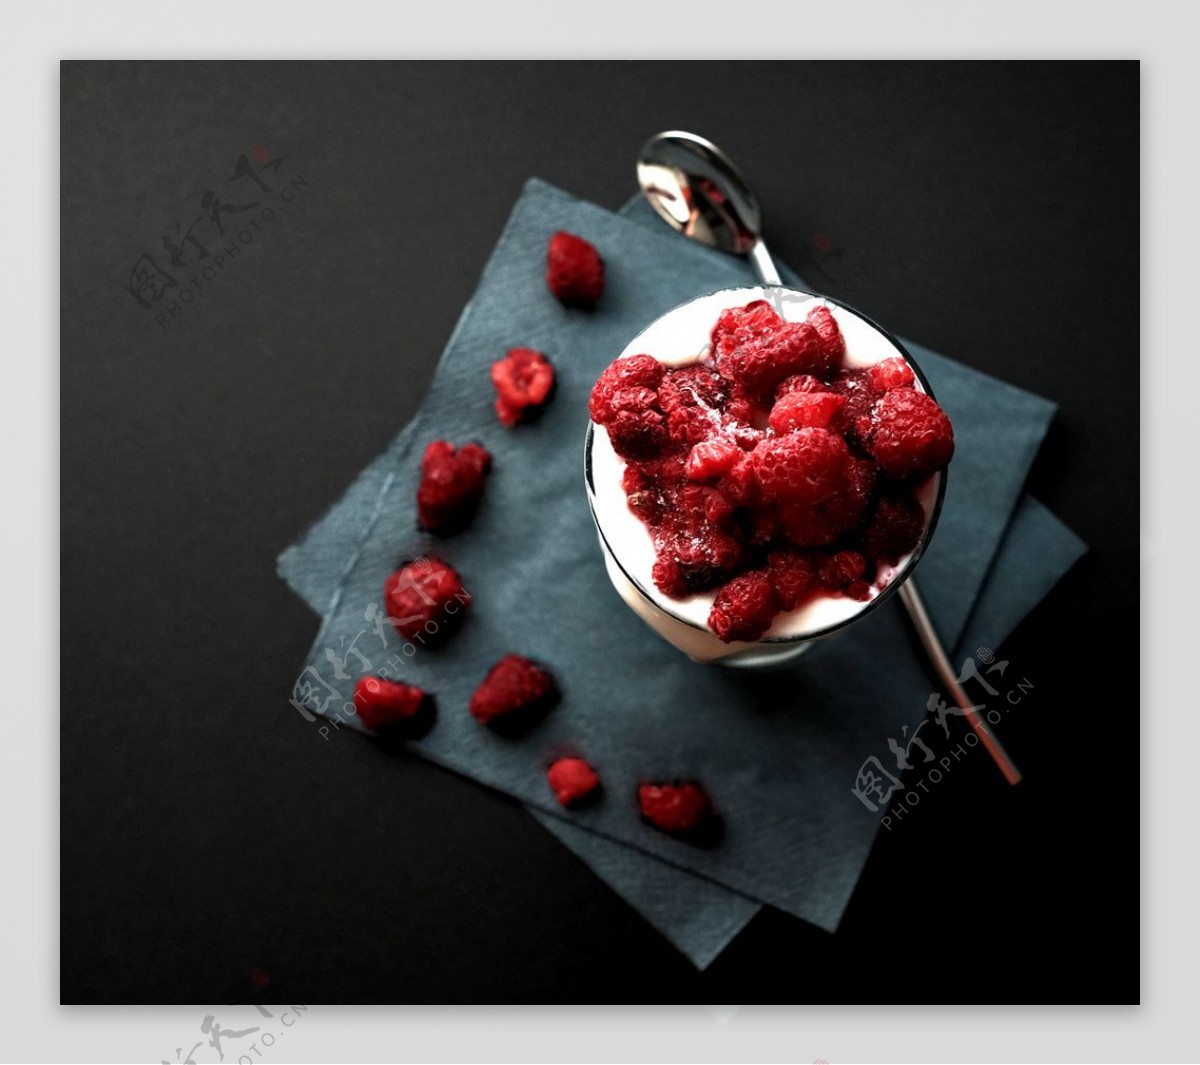 新鲜的莓莓酸奶 库存照片. 图片 包括有 食物, 有机, 树莓, 膳食, 健康, 酸奶, 点心, 新鲜, 制动手 - 20352340